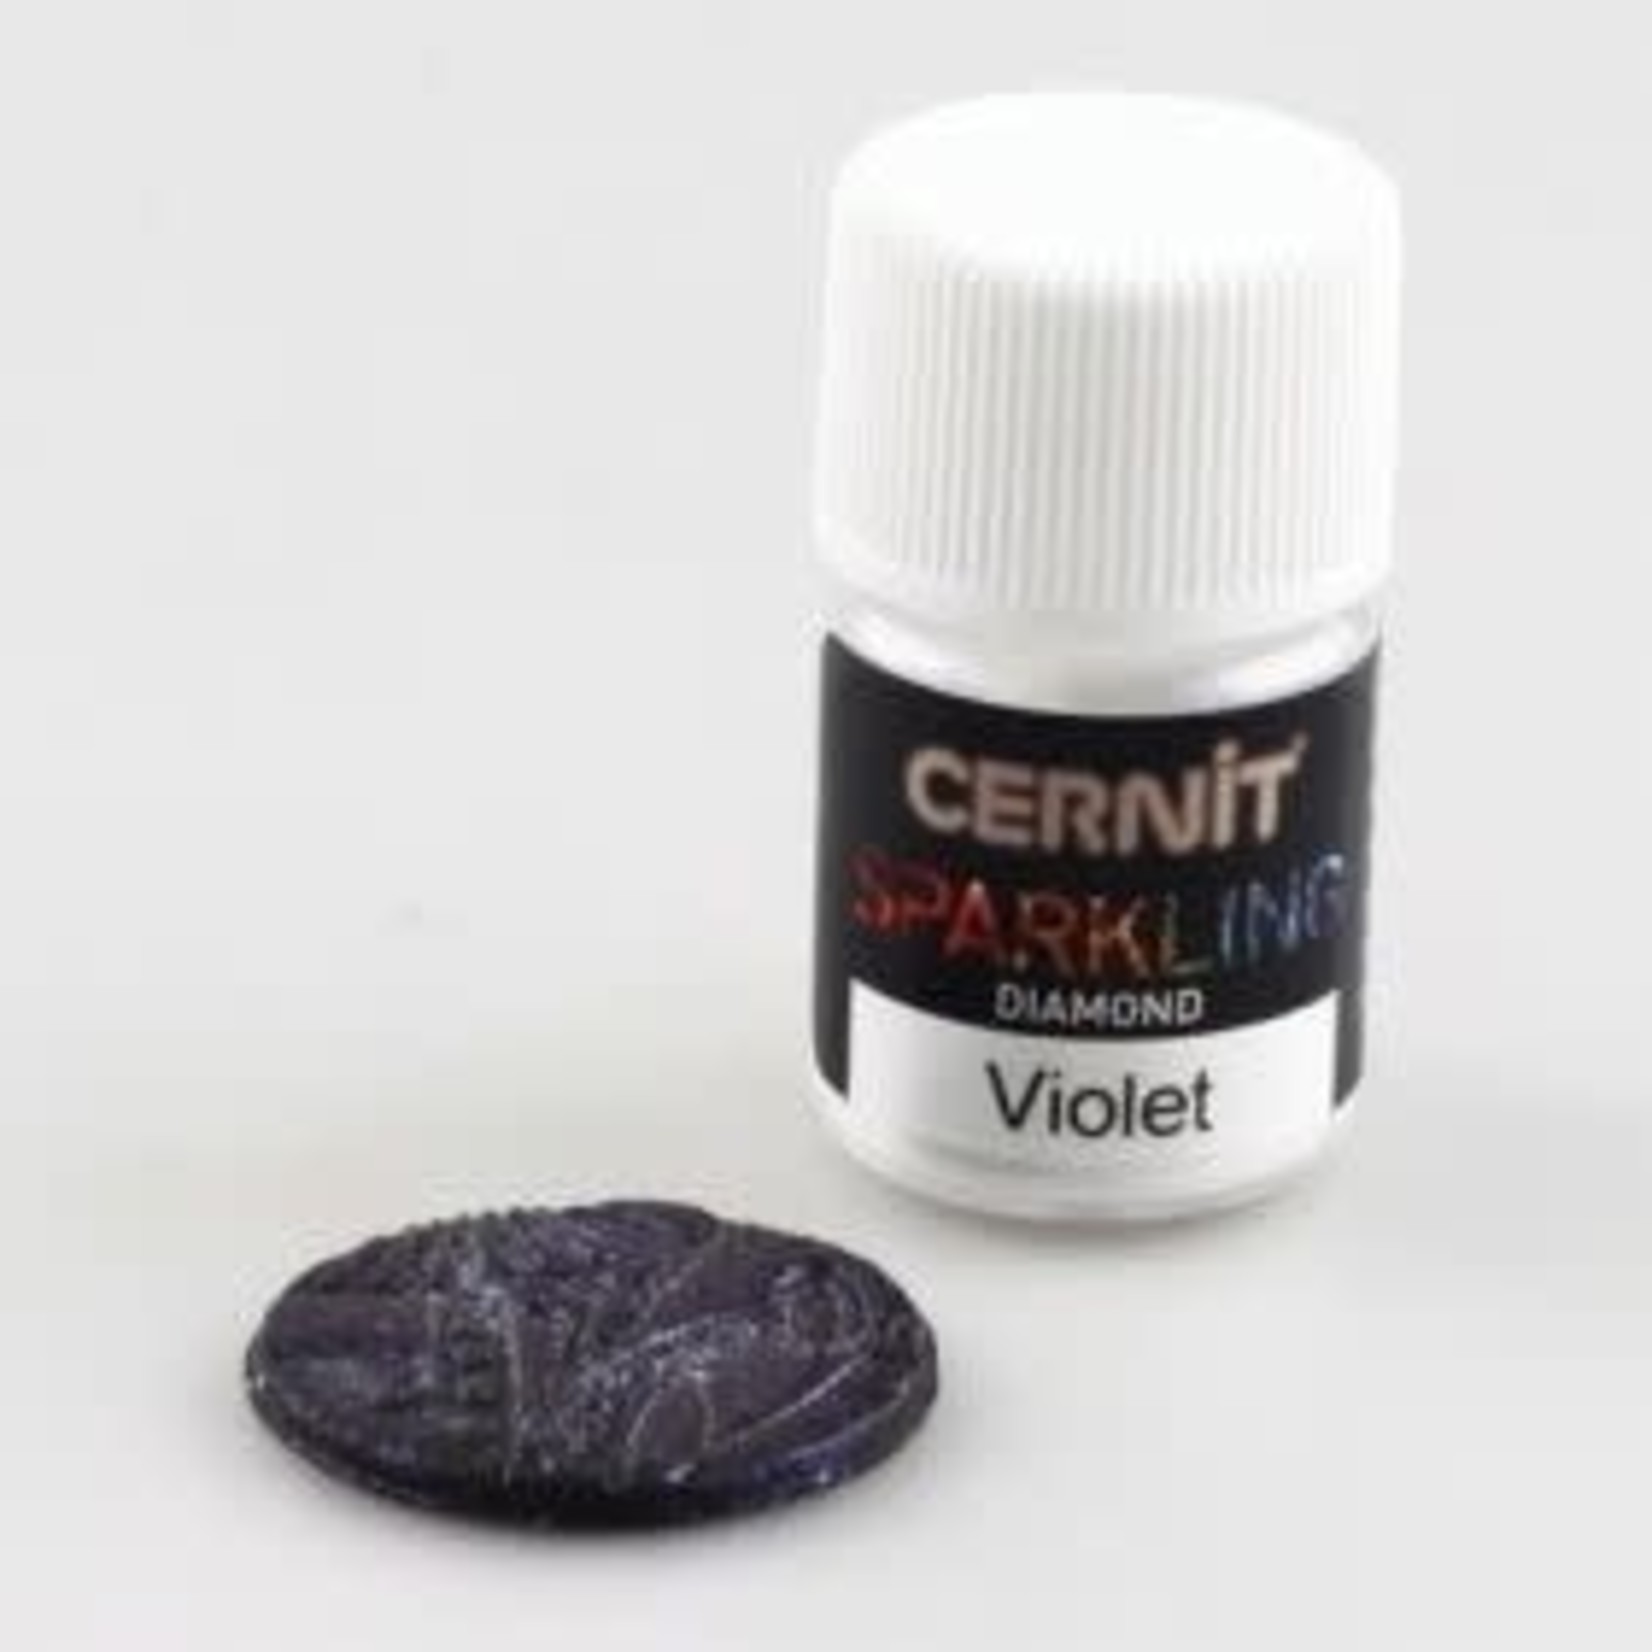 Cernit Cernit Sparkling Diamond Violet 5 Gr